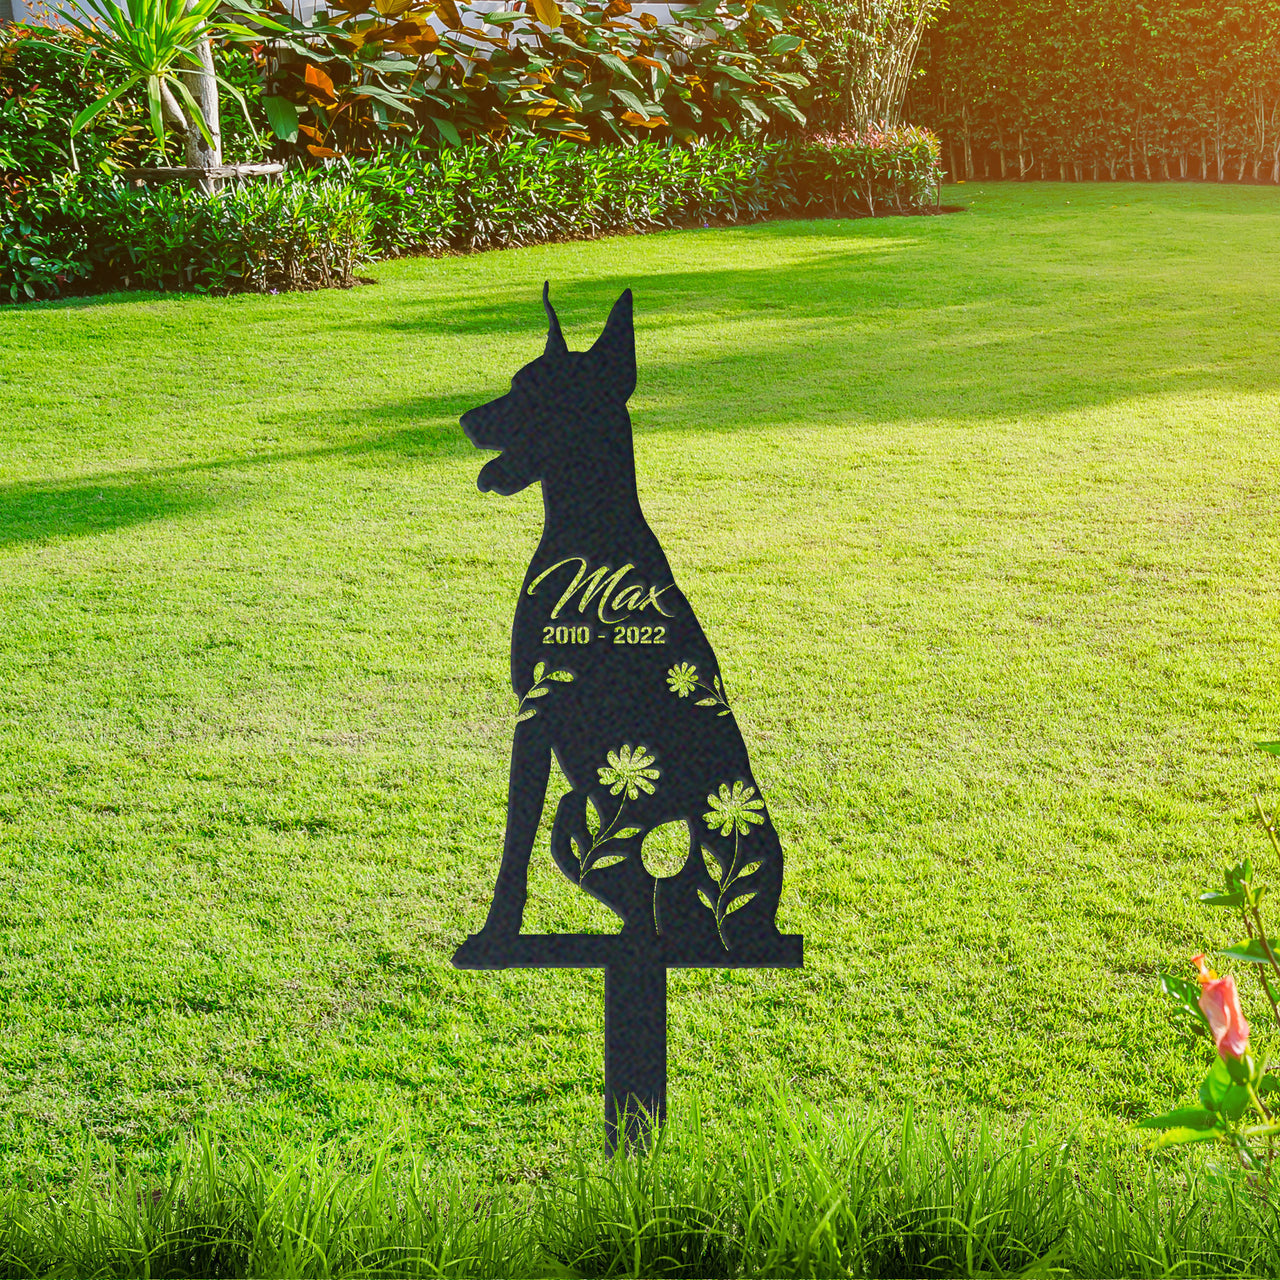 Personalized Cute Doberman Garden Stake Pet Memorial Signs Pet Loss Gift